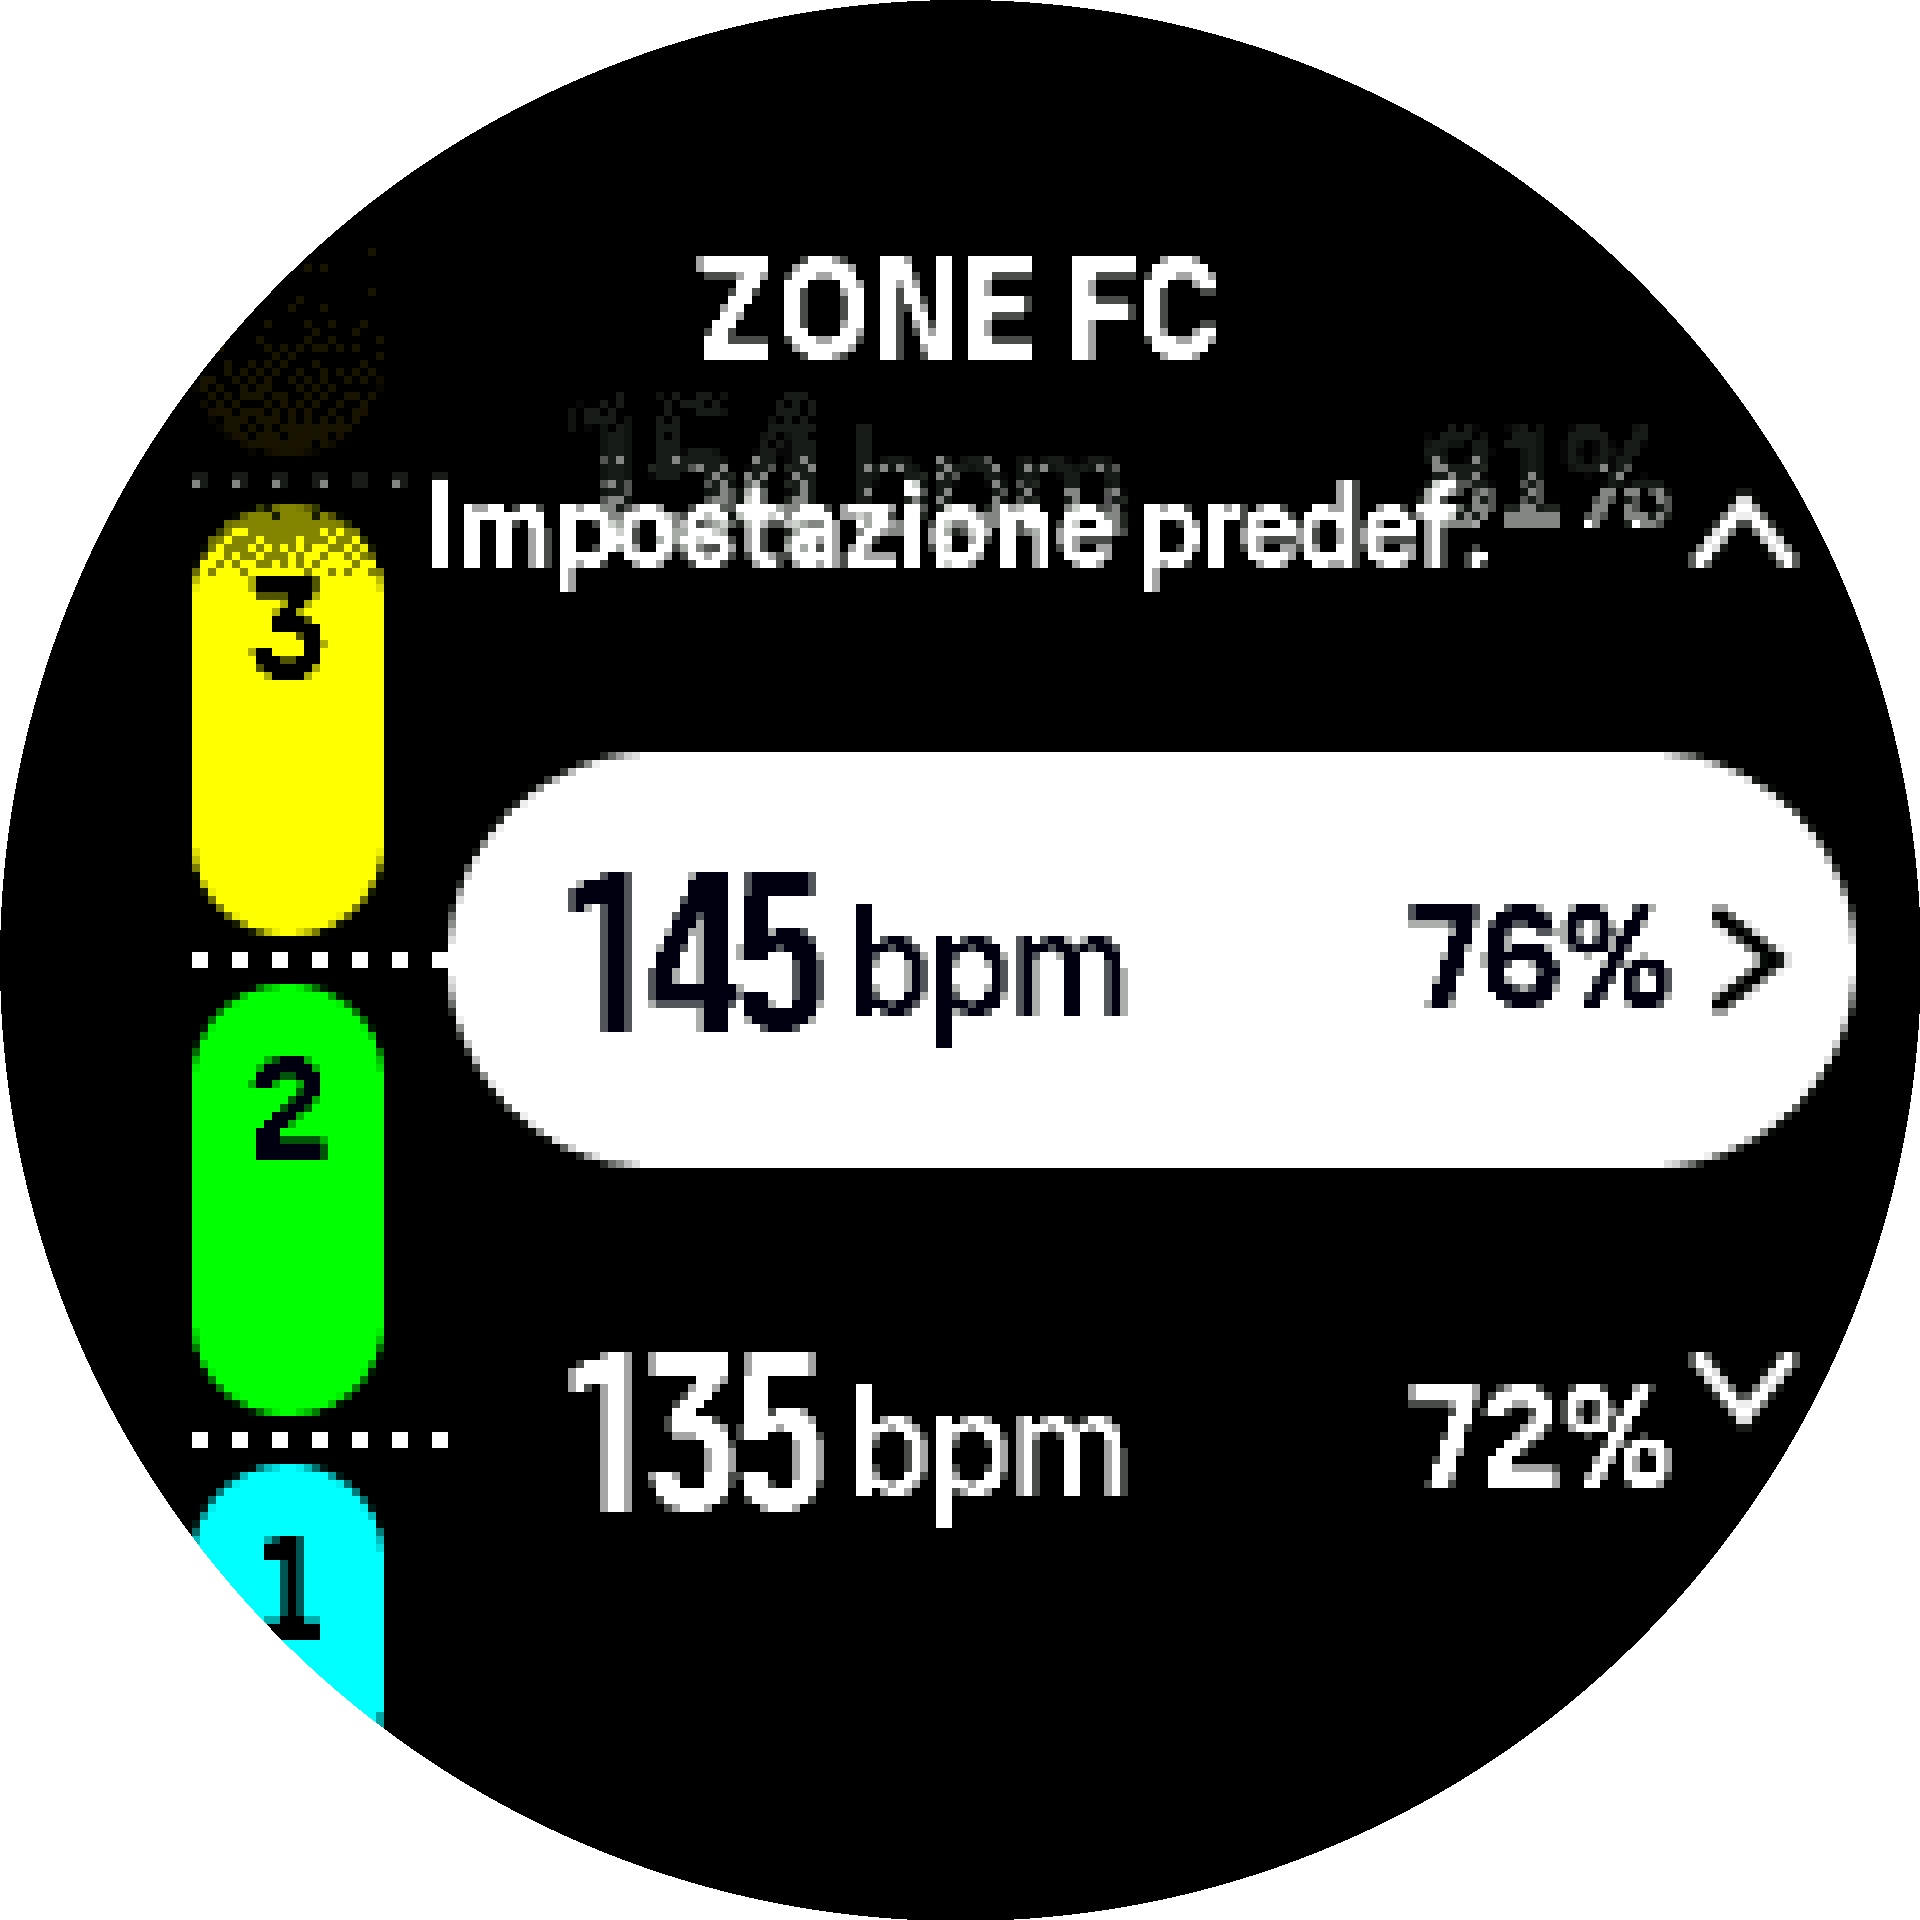 Zone FC predefinite S9PP